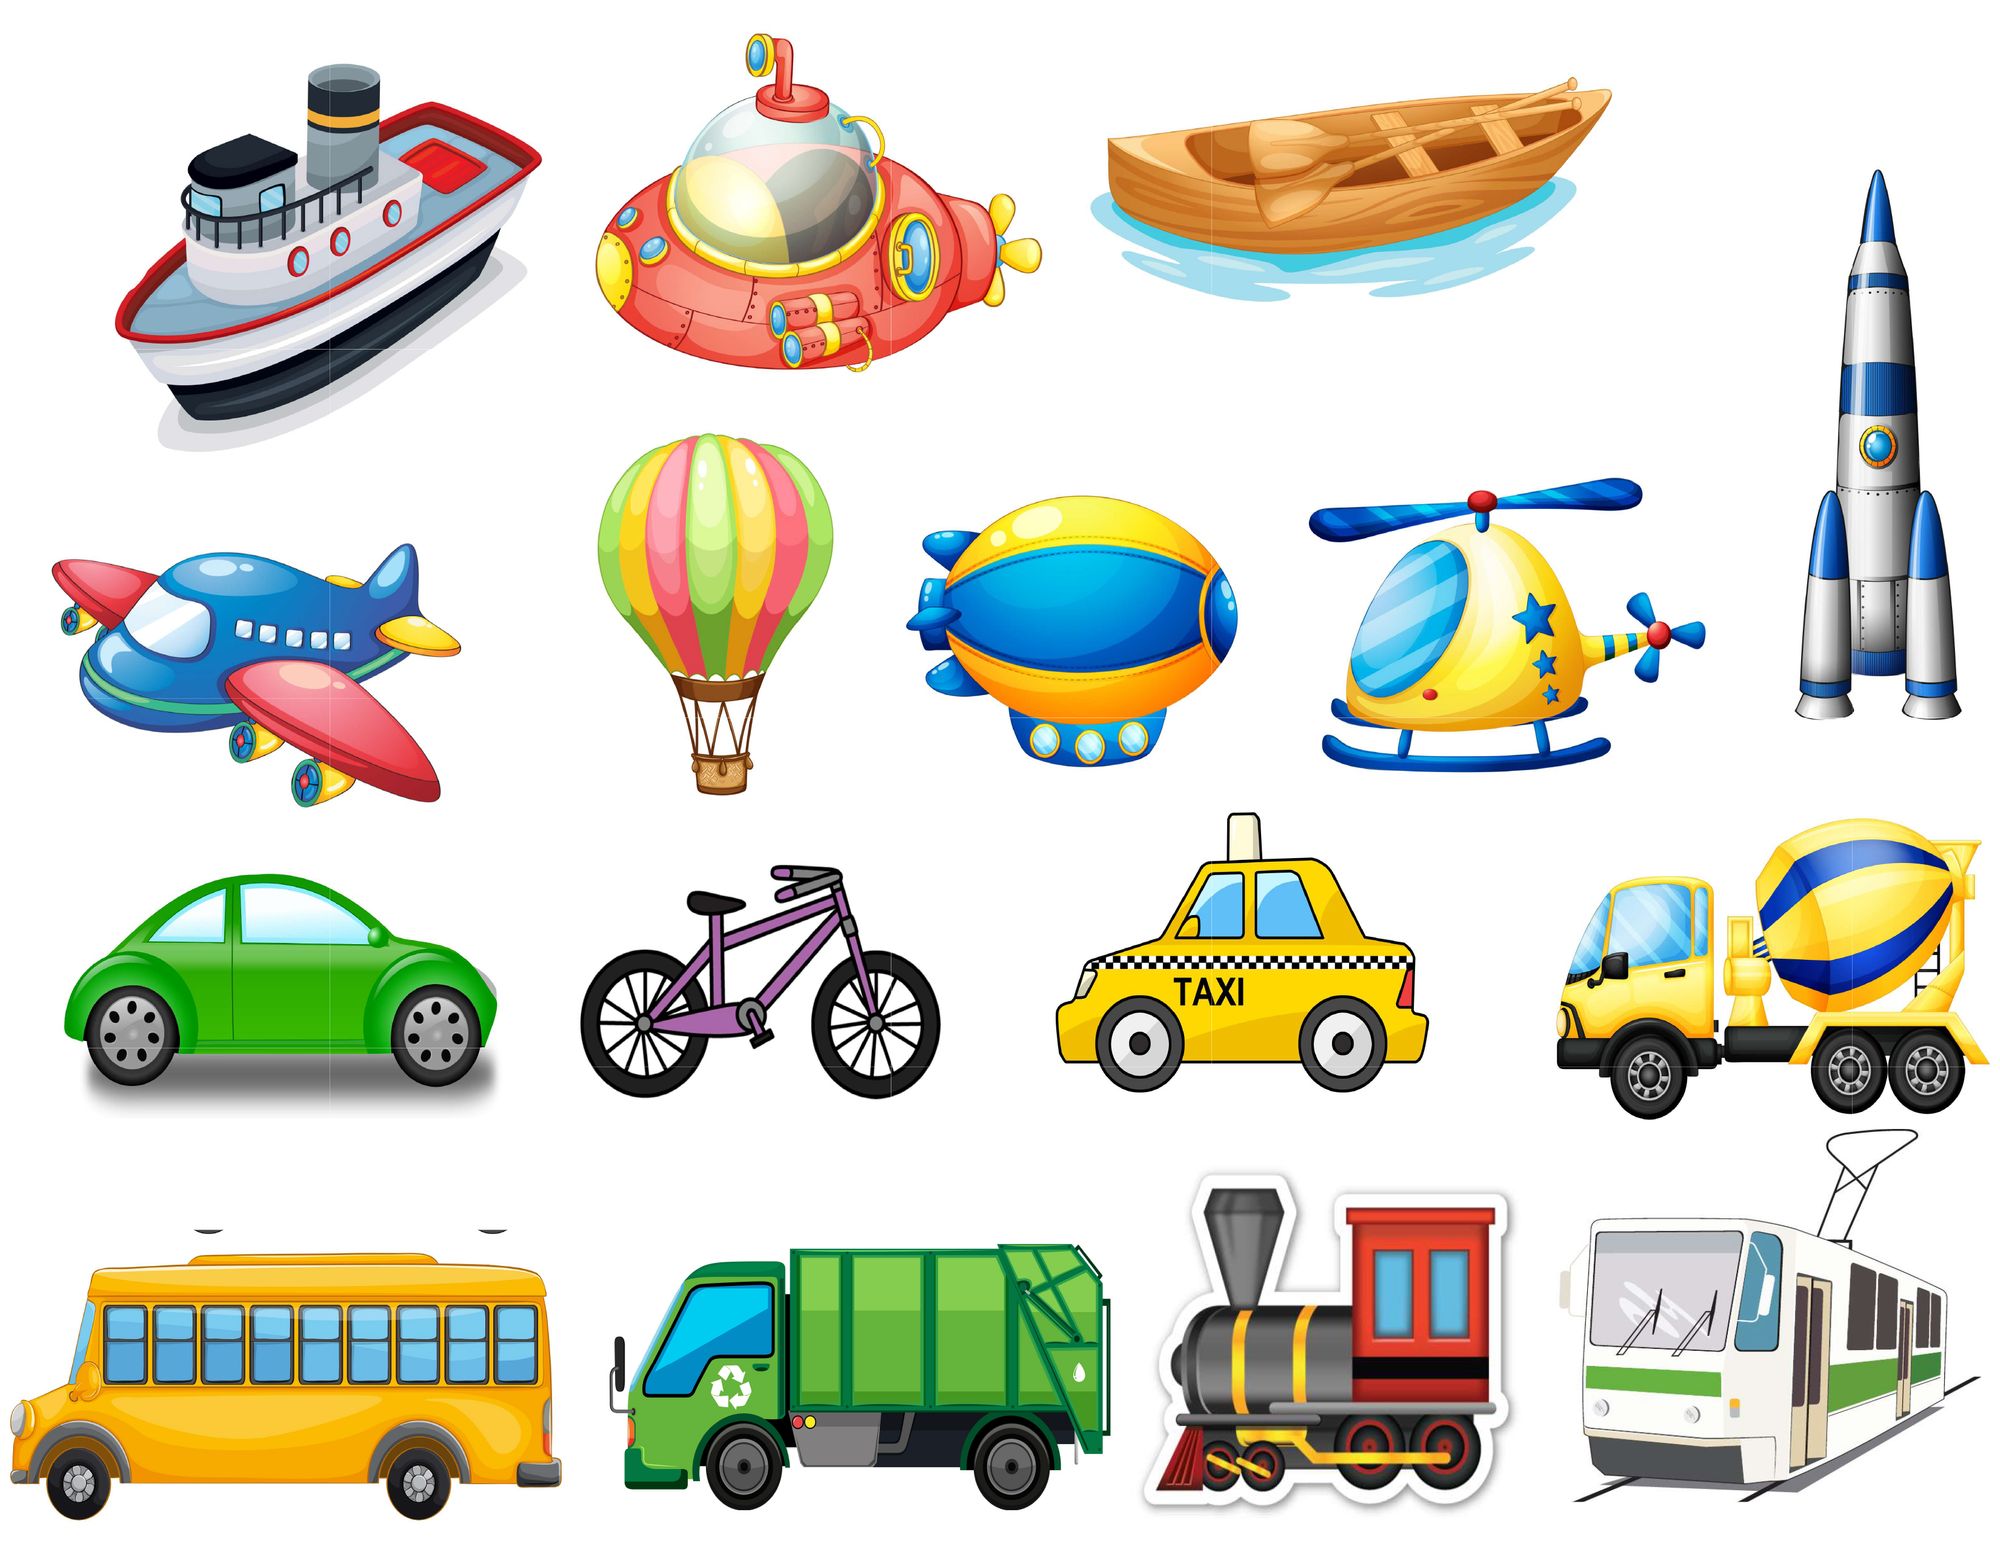 Transport picture. Транспорт картинки для детей. Детям о транспорте. Мультяшный транспорт. Транспорт для дошкольников.